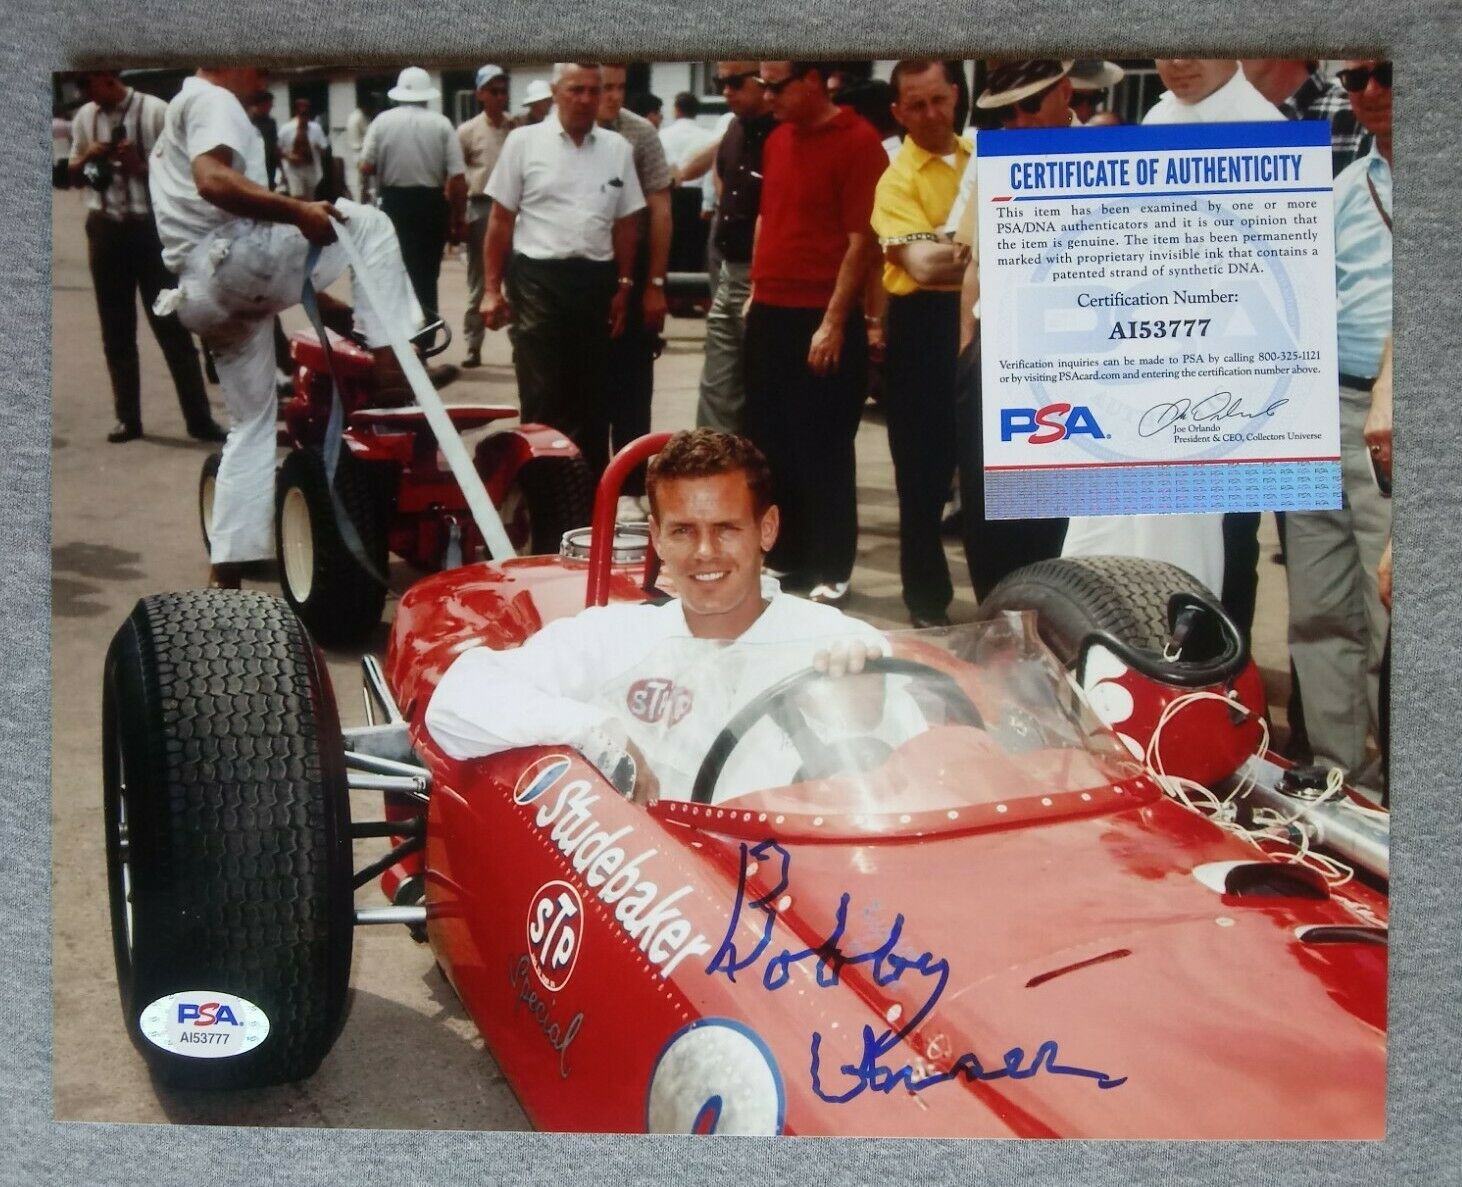 1965 Indy 500- Bobby Unser Autograph 8x10 Portrait Photo Psa/dna Ai53777